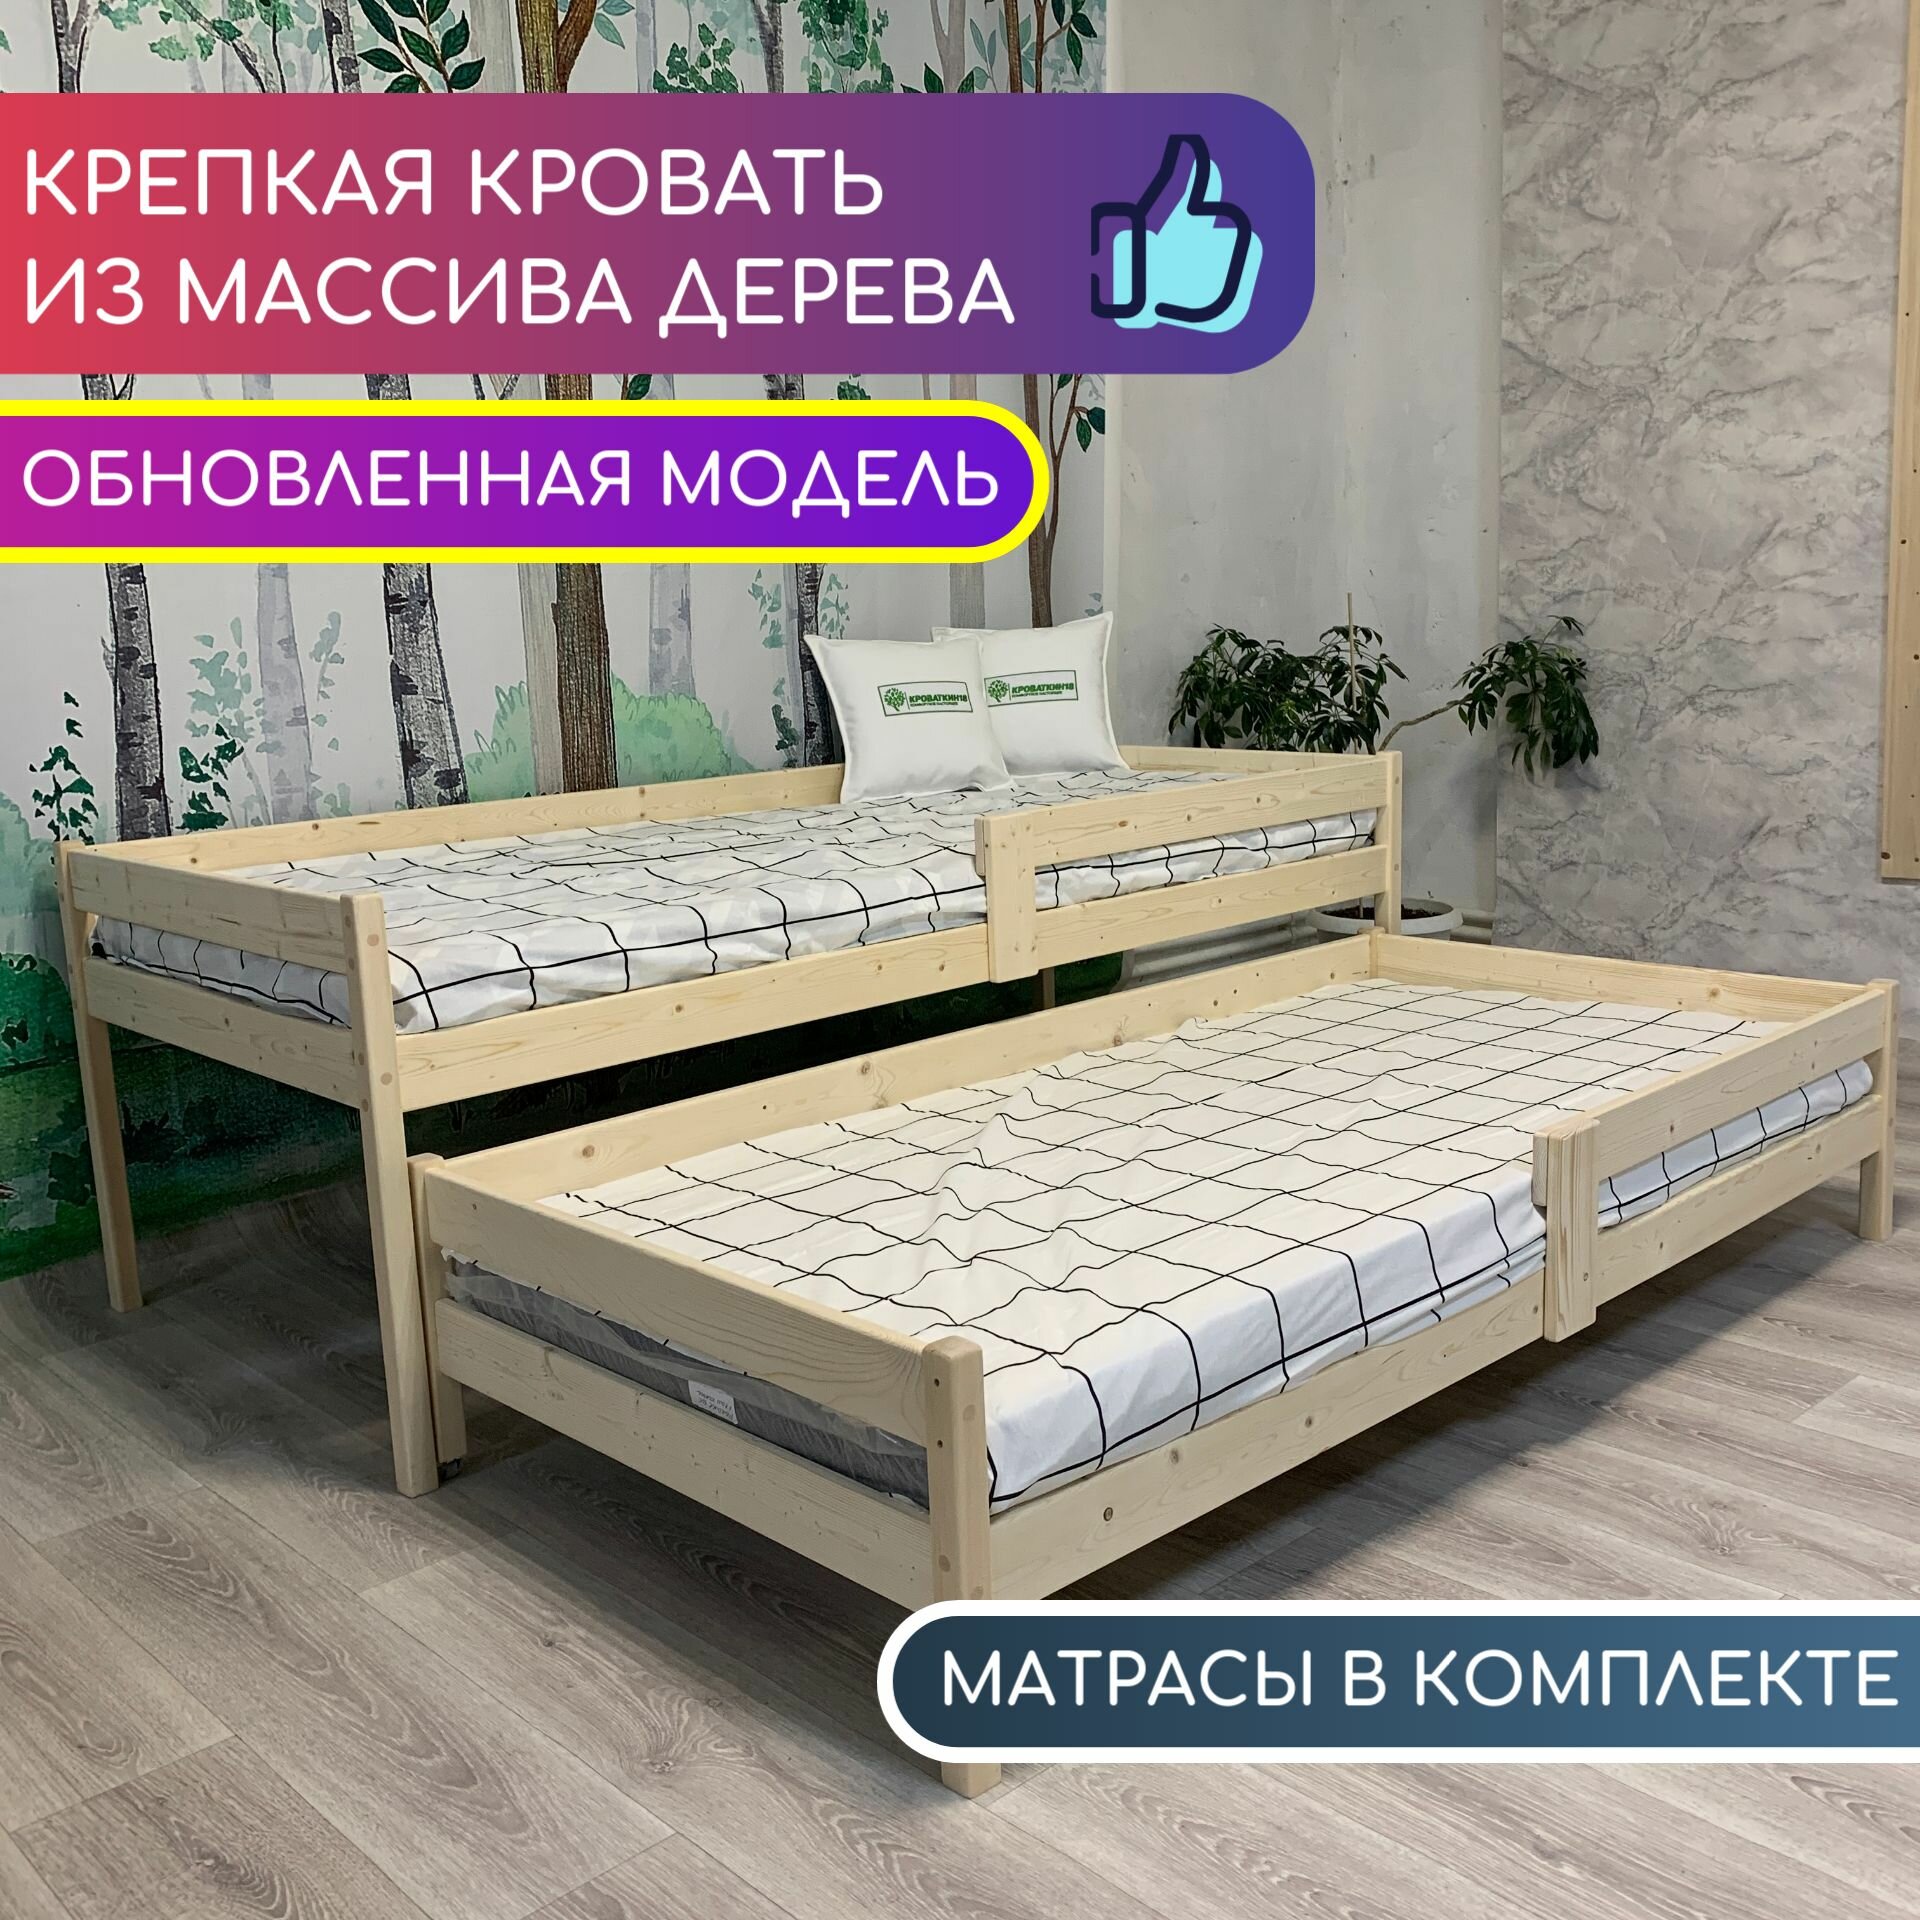 Кровать выдвижная, кровать выкатная детская для двоих, двухъярусная кровать "Эсла" с матрасами 90х200, 90х190 из массива дерева (без покрытия)